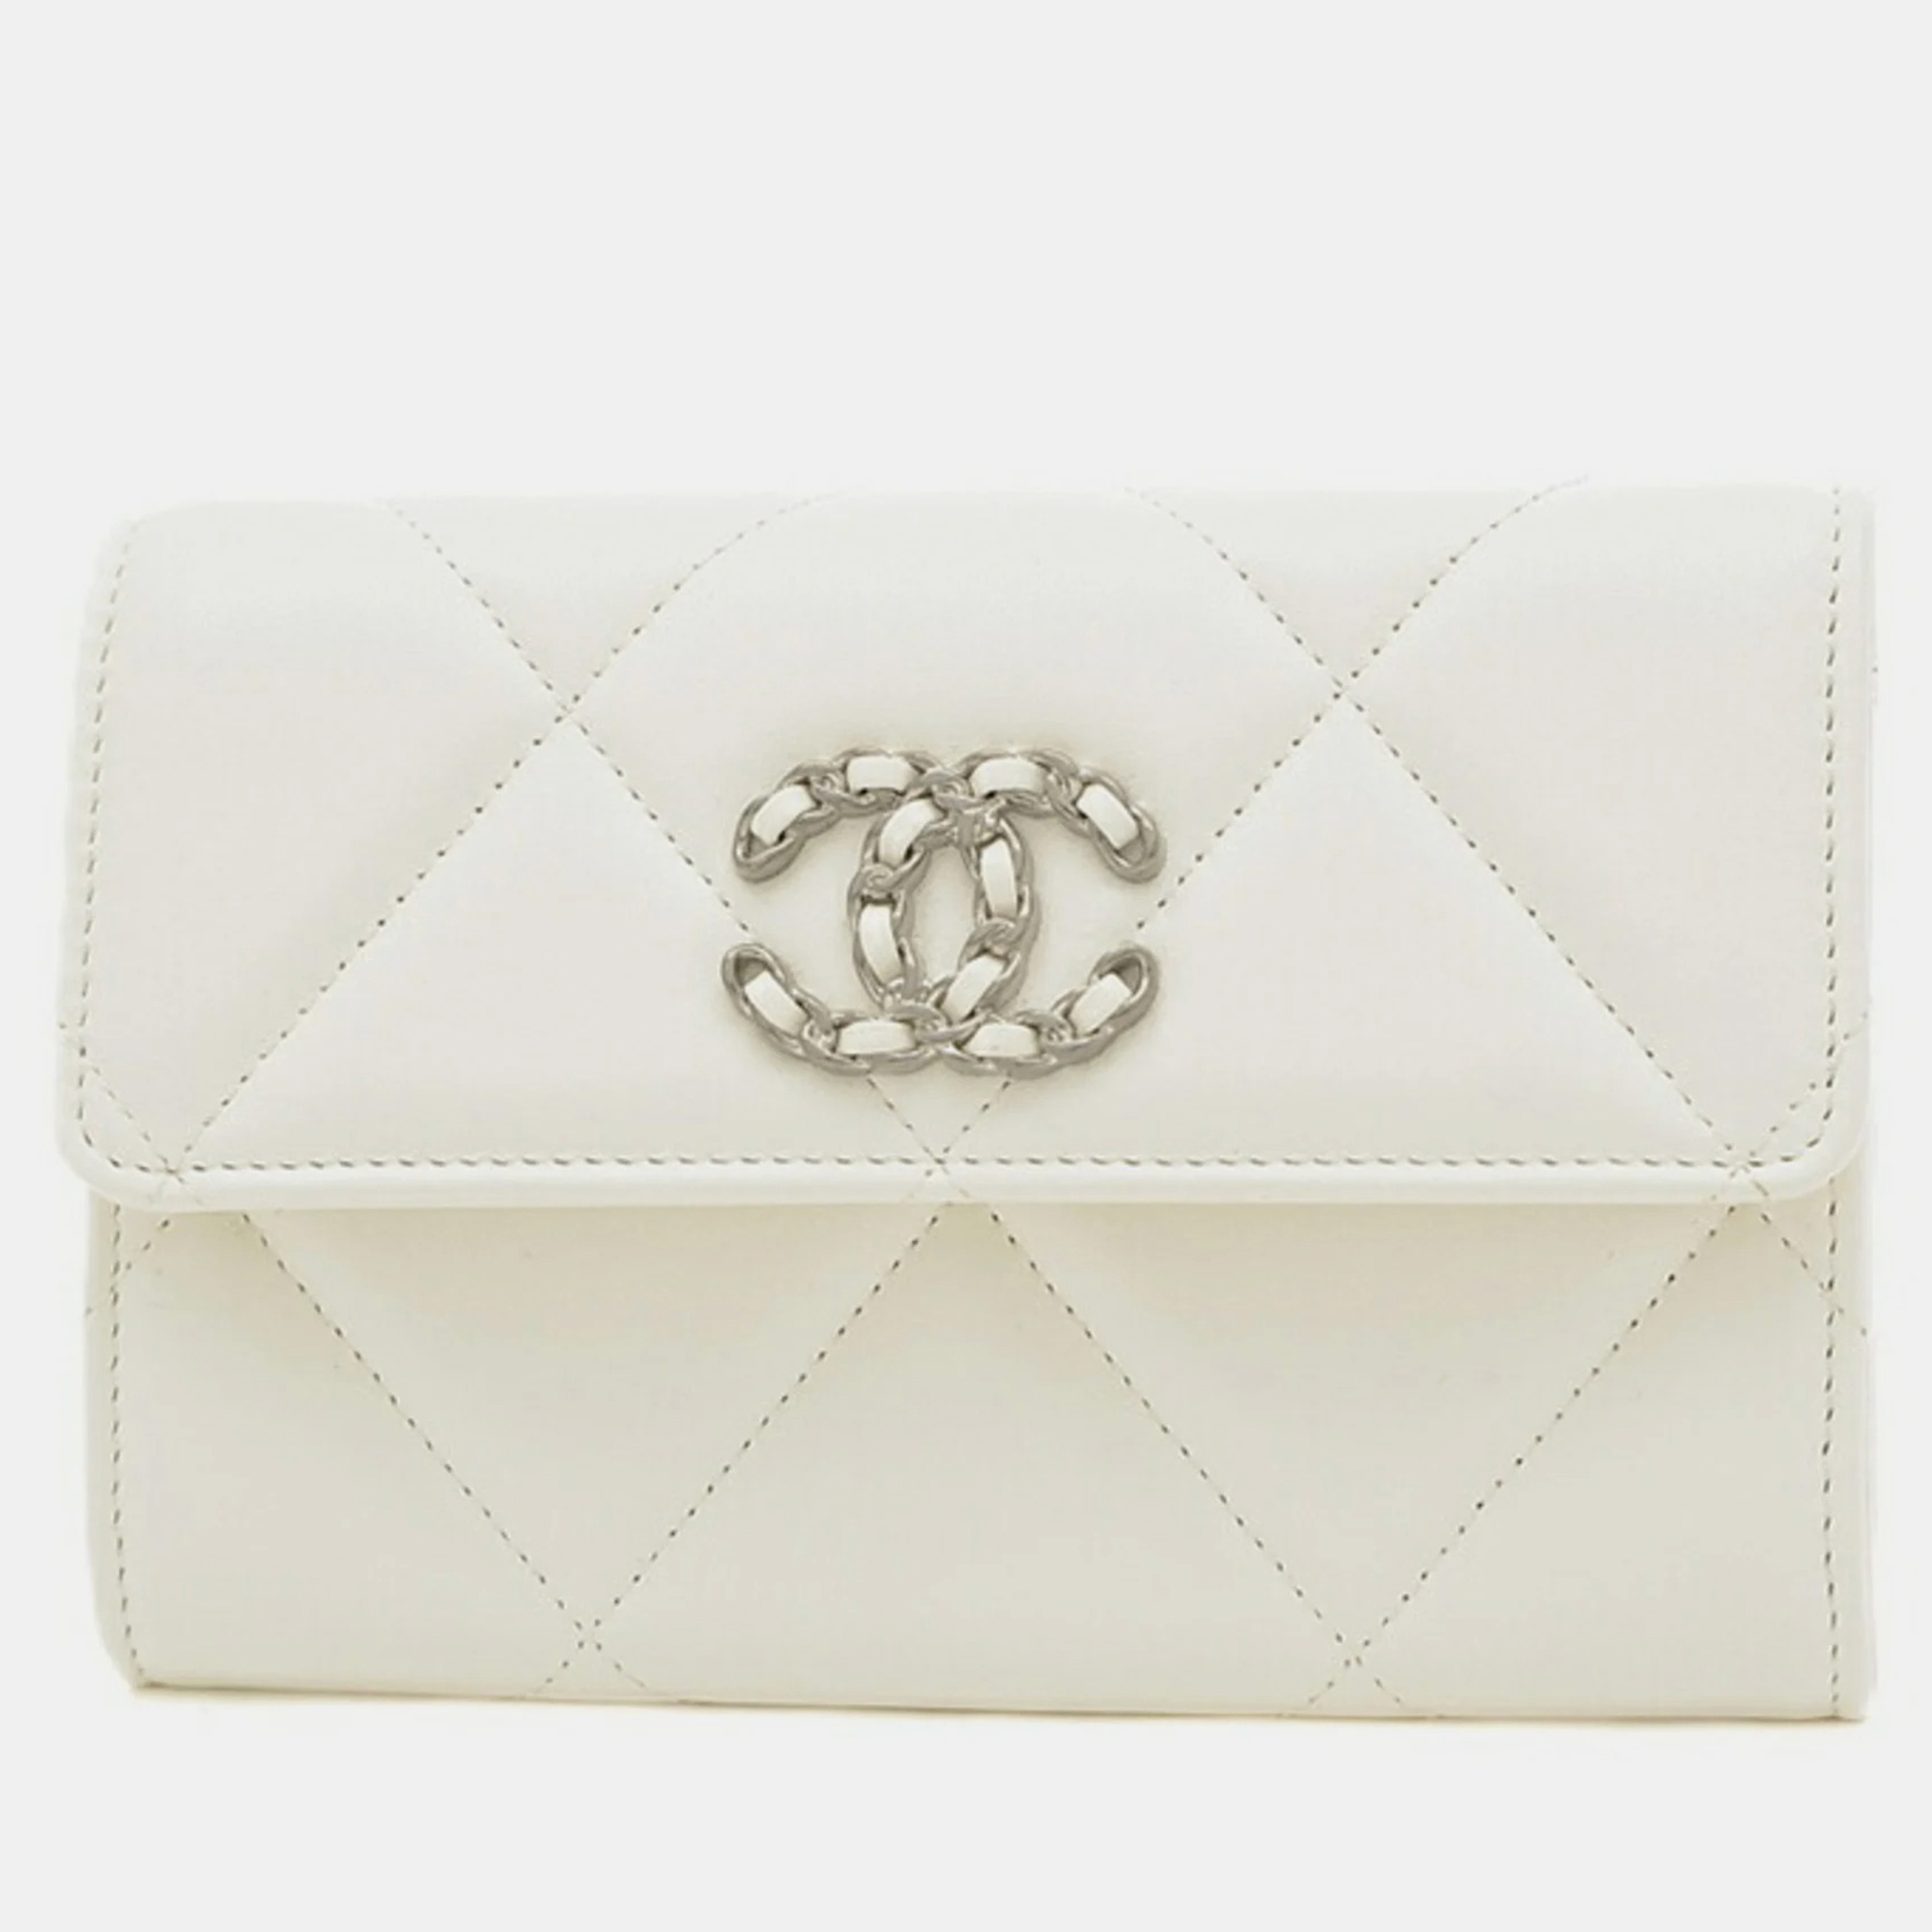 Chanel white lambskin leather 19 flap wallet